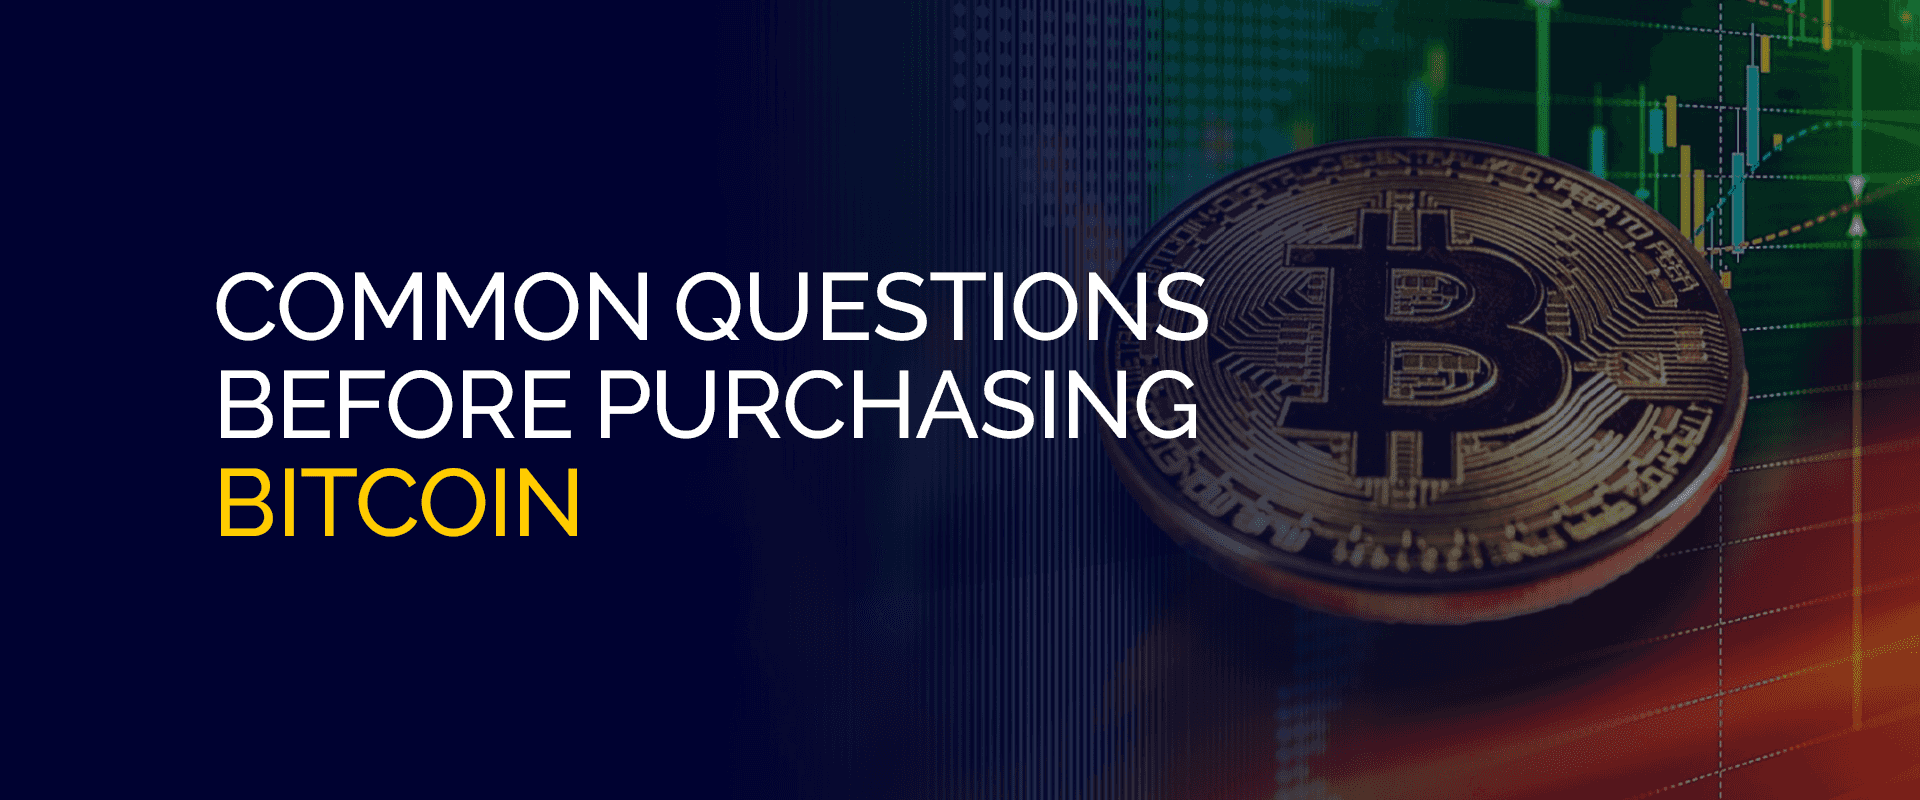 Häufige Fragen vor dem Kauf von Bitcoin